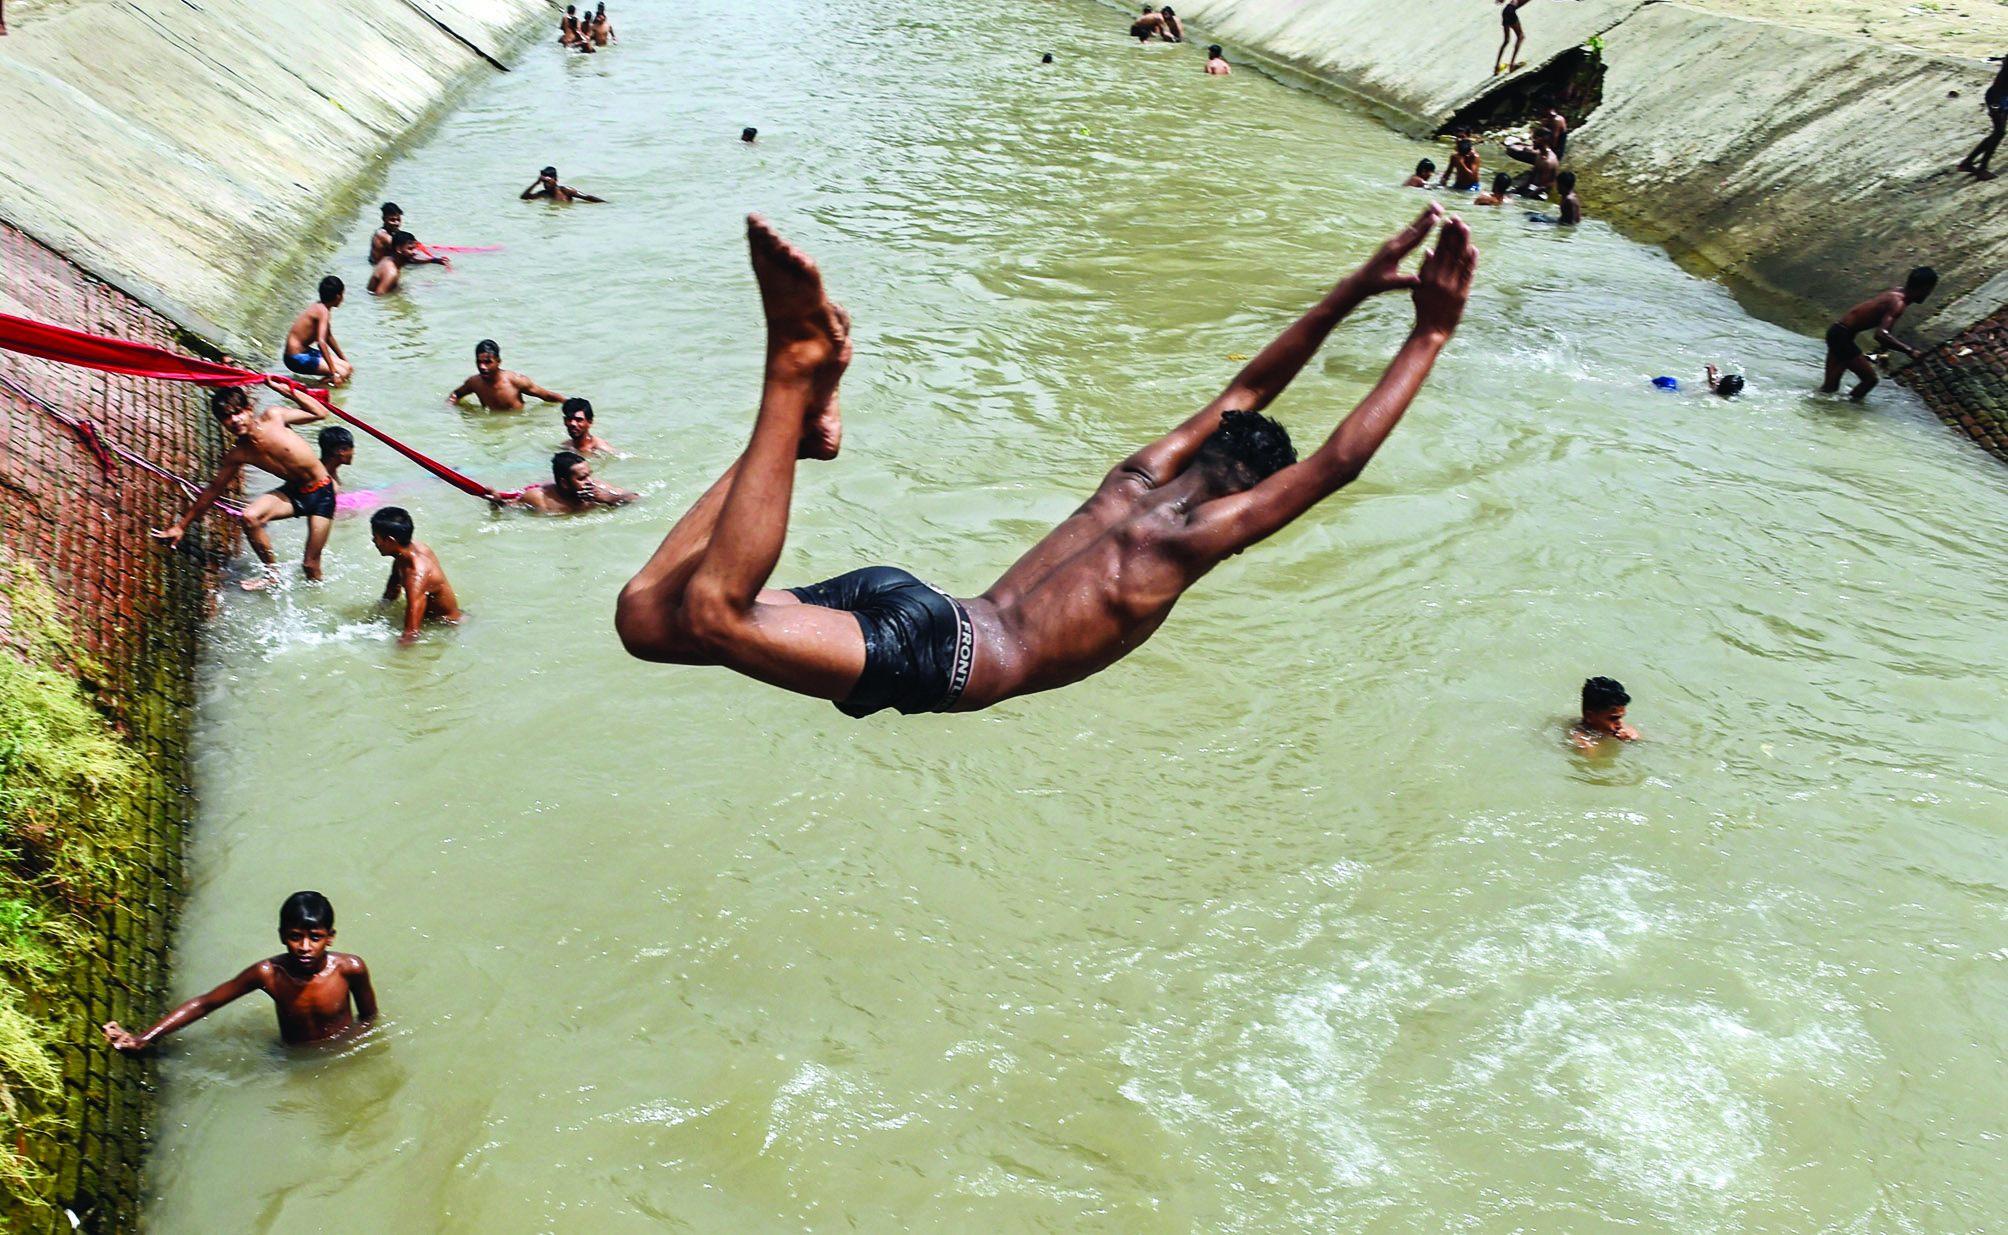 Three children drown in pond in northeast Delhi